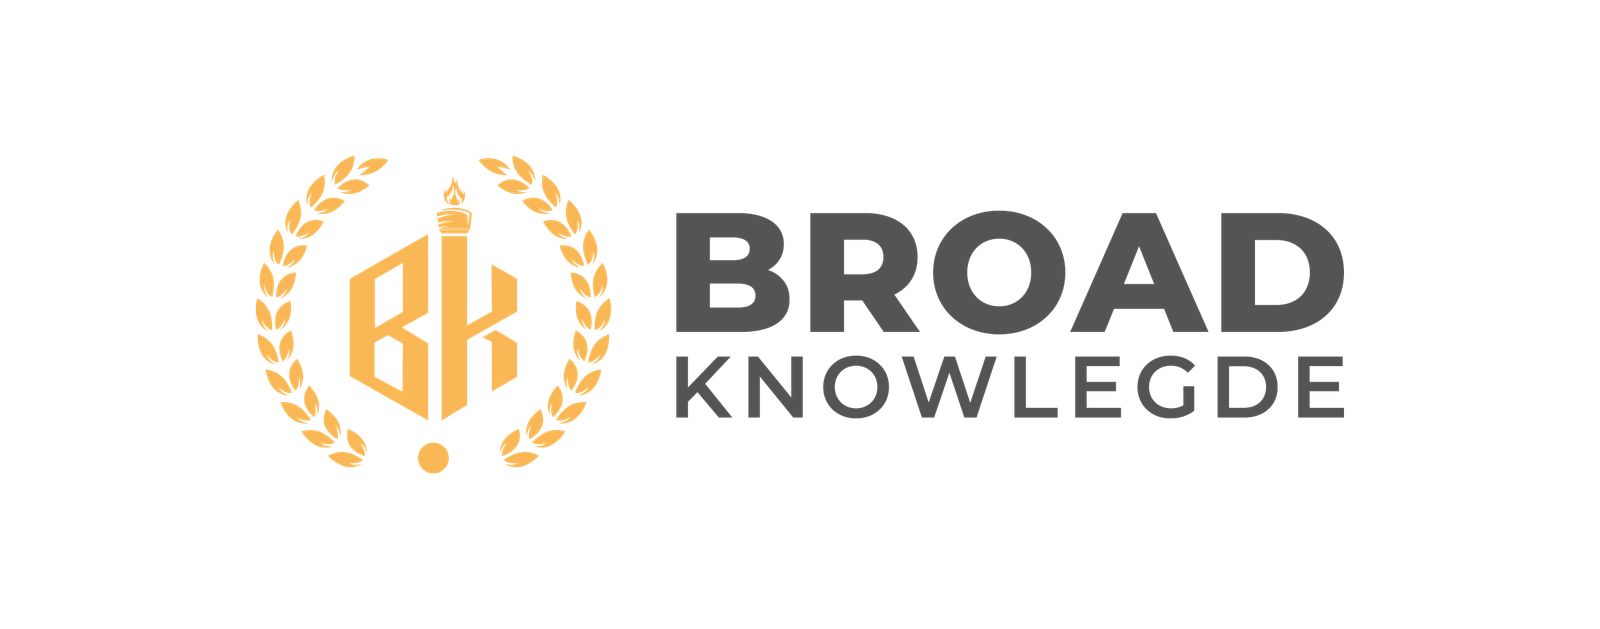 Broad Knowlegde